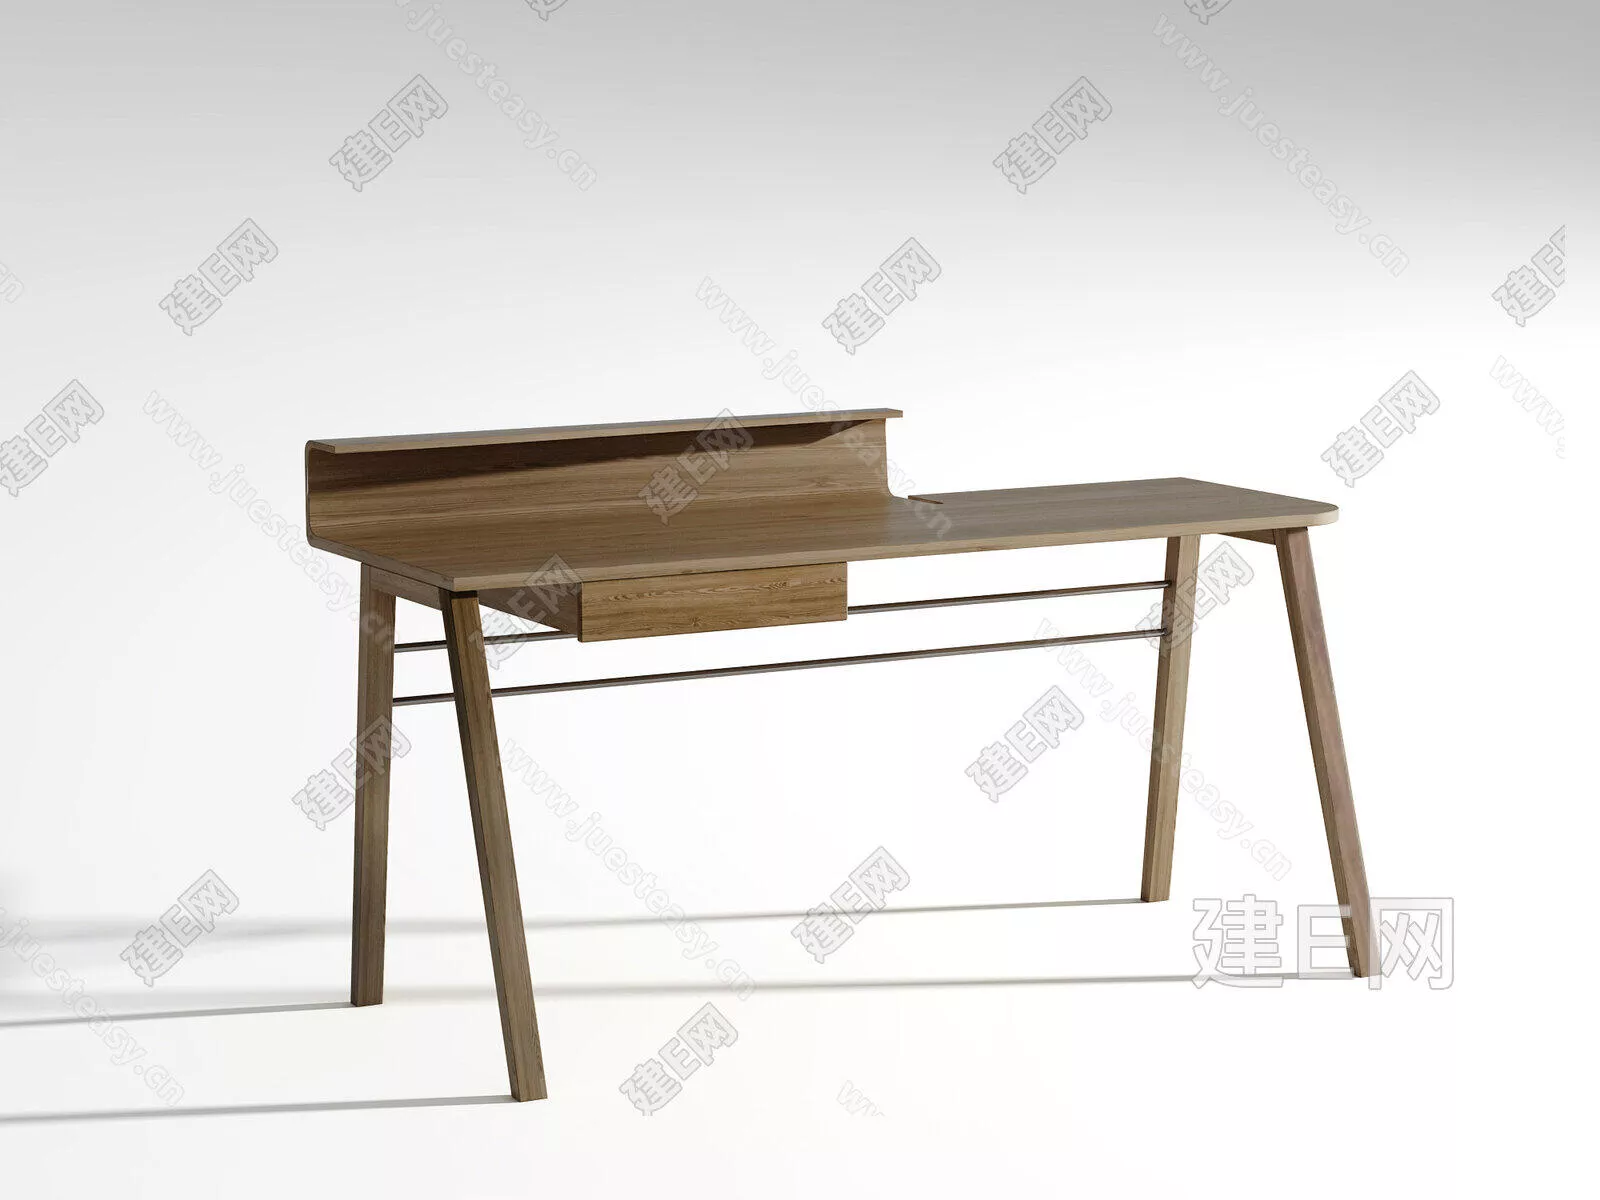 MODERN DINING TABLE SET - SKETCHUP 3D MODEL - ENSCAPE - 110841088